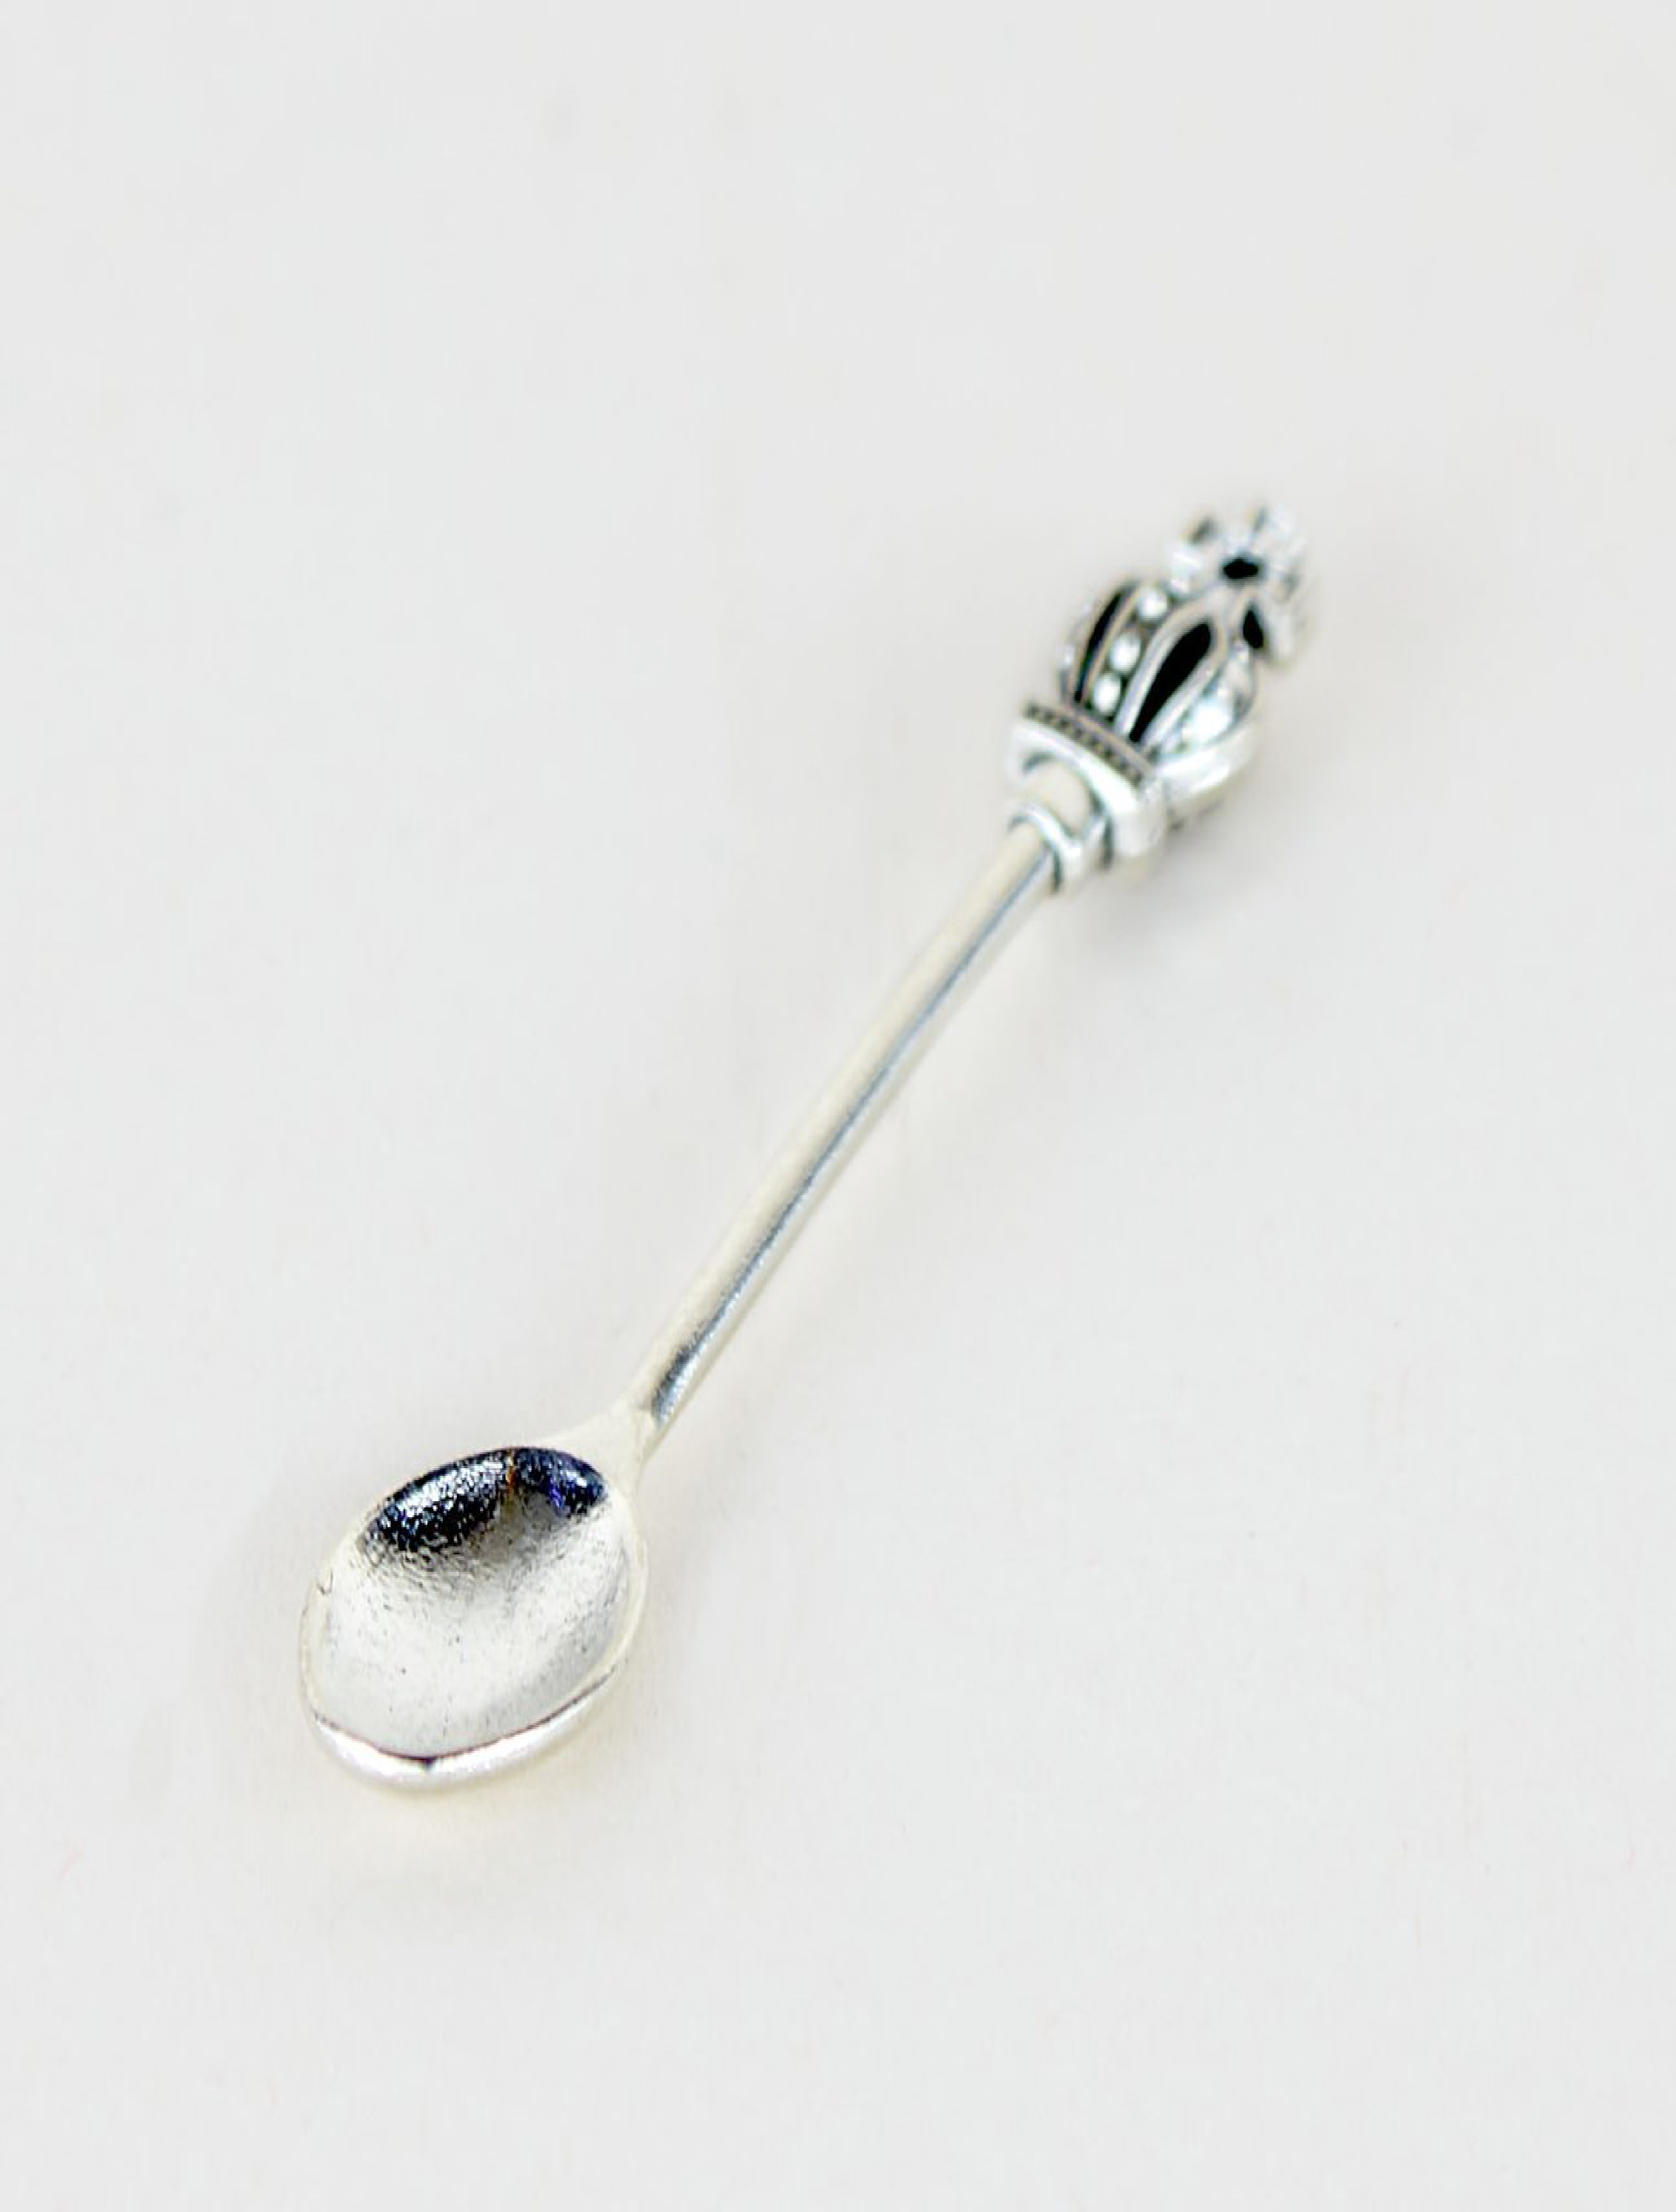 'Imperial Measure' Spoon